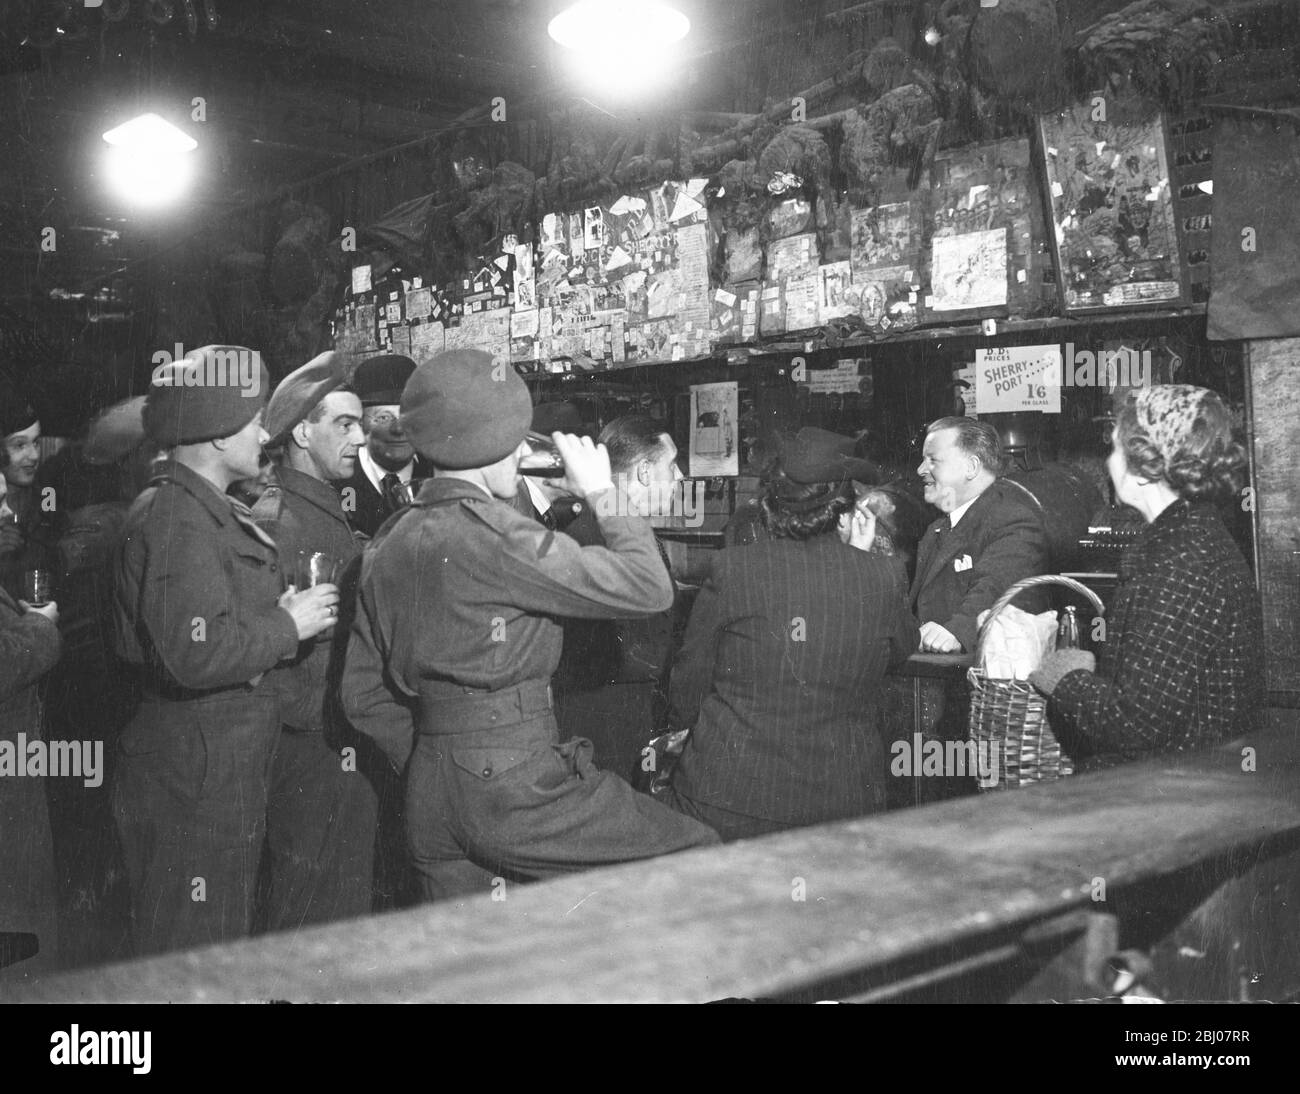 Soldaten des Royal Army Service Corps in einem Pub Stockfoto